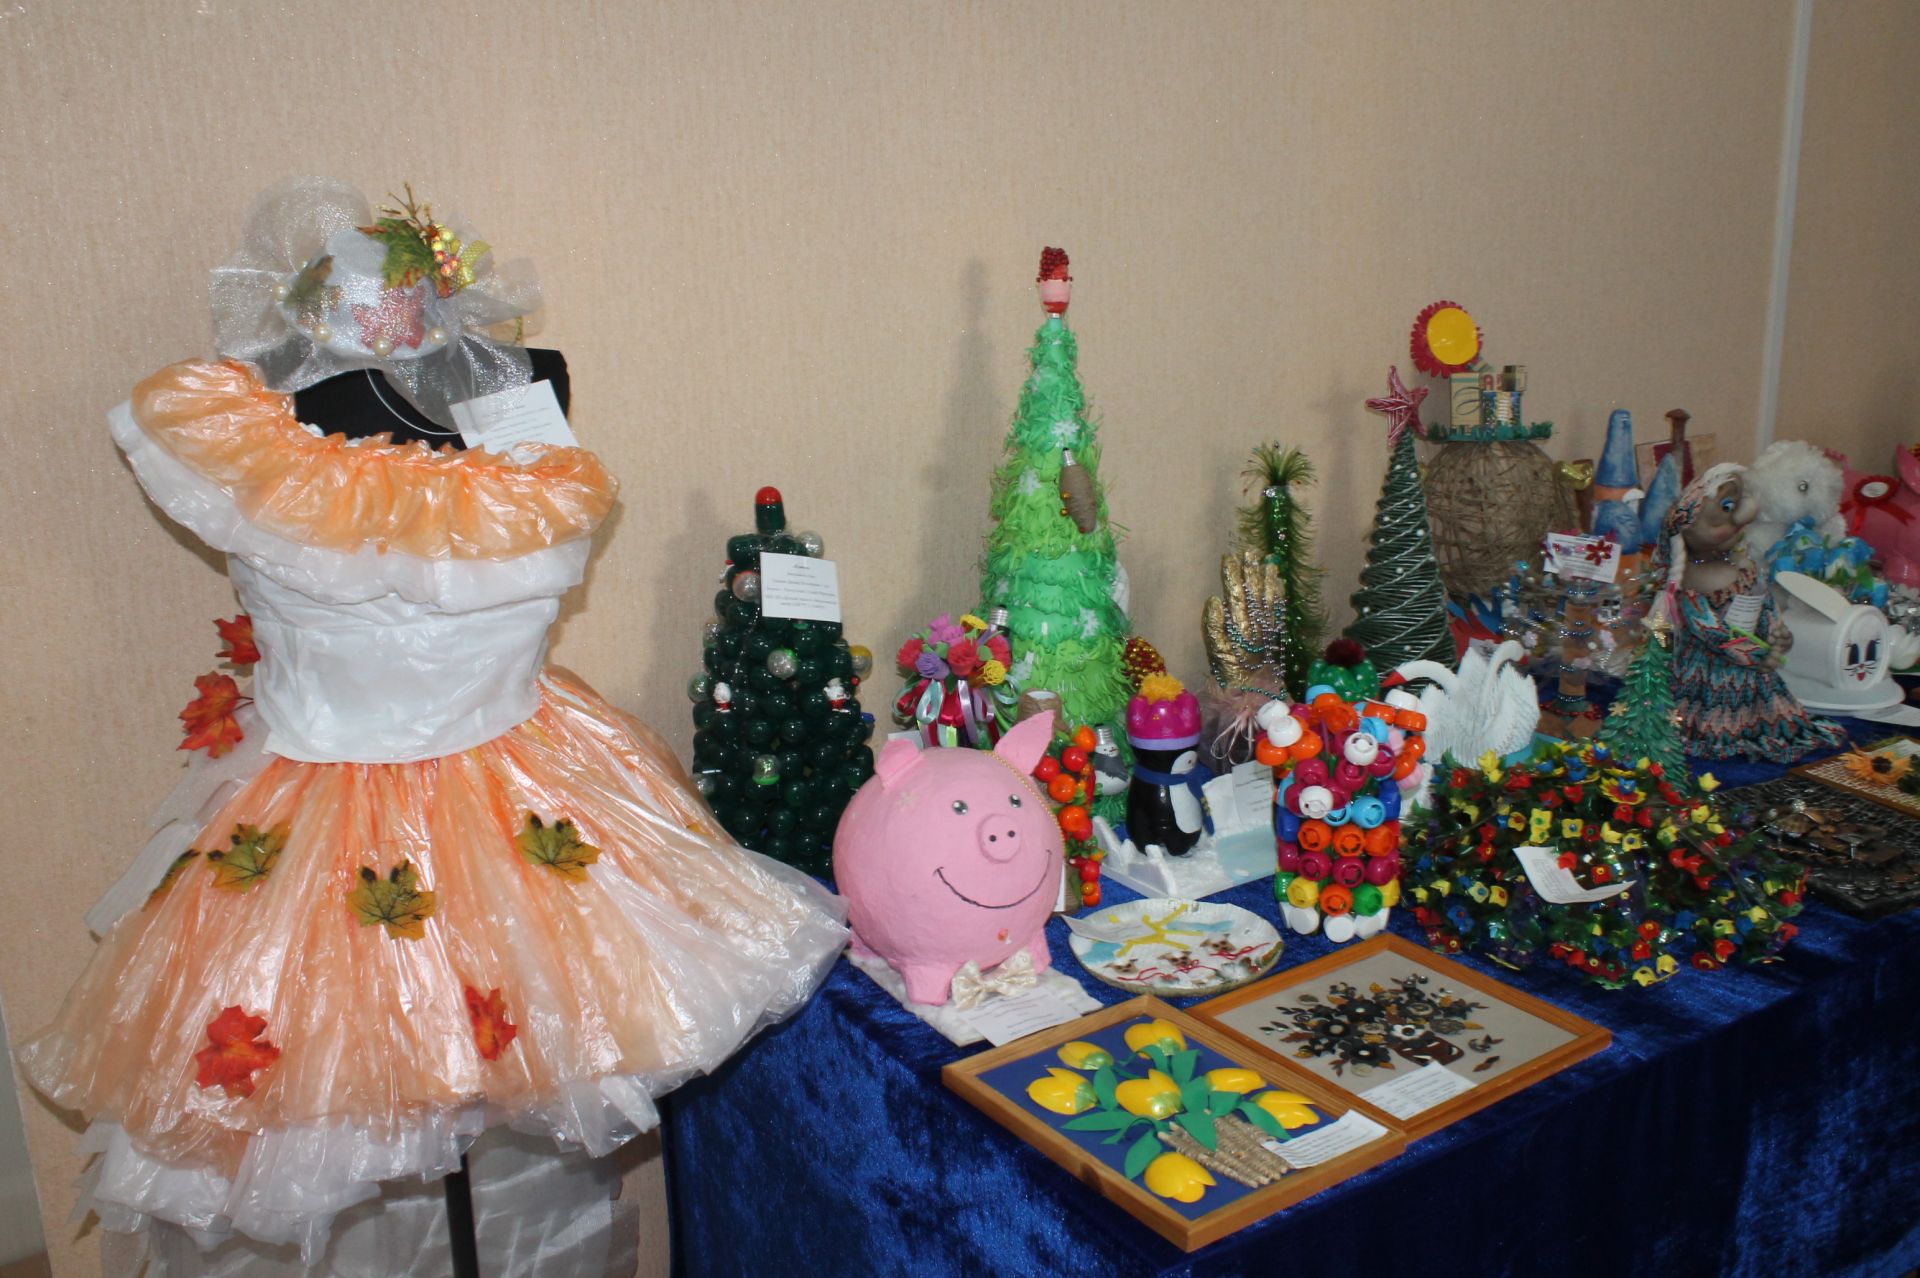 В Детский эколого-биологический центр Елабуги привезли более 200 экспонатов со всего Татарстана